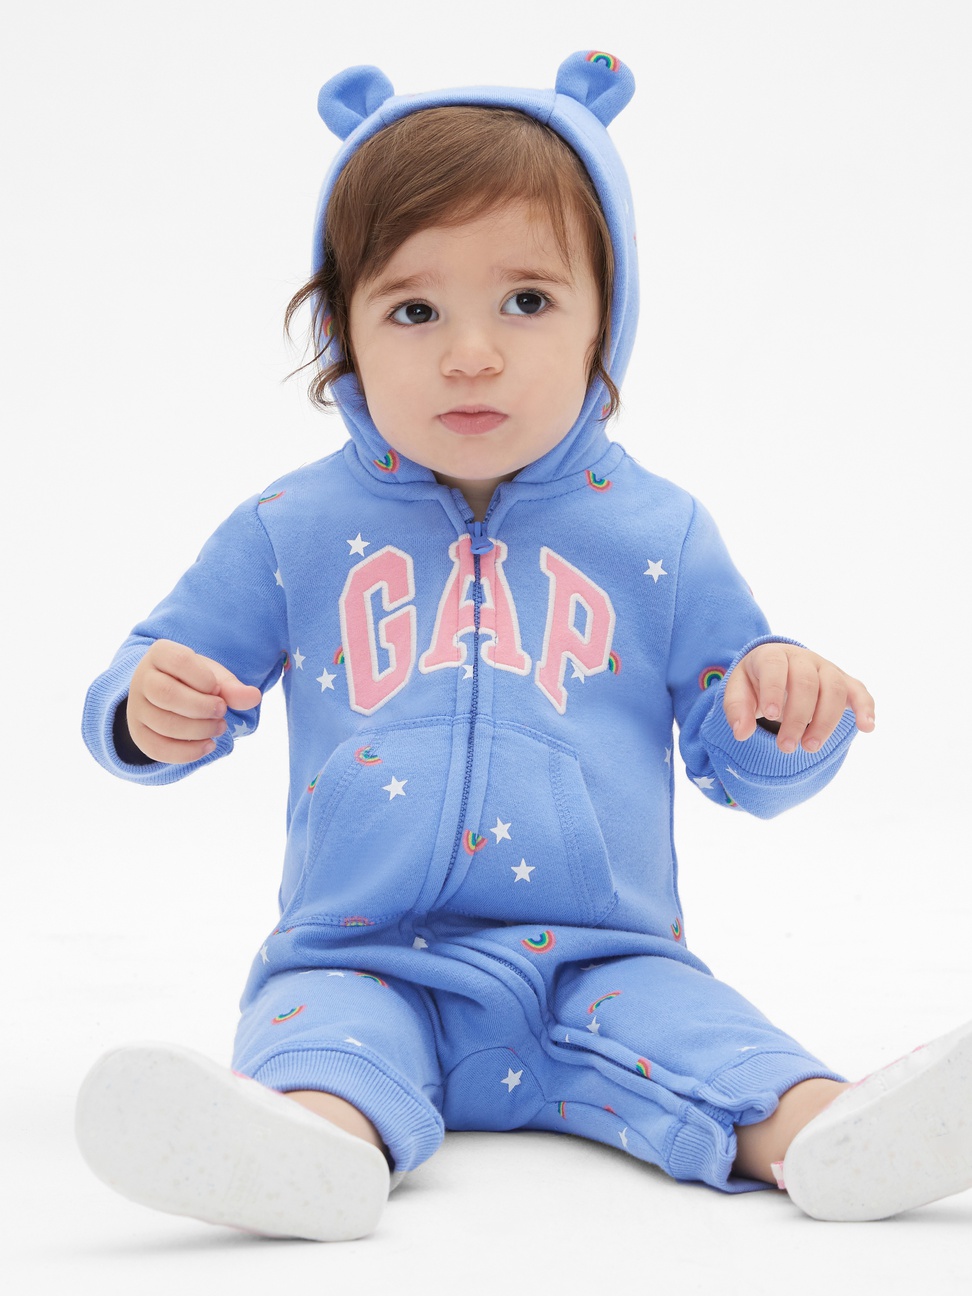 嬰兒裝|Logo長袖連帽包屁衣-摩爾藍色